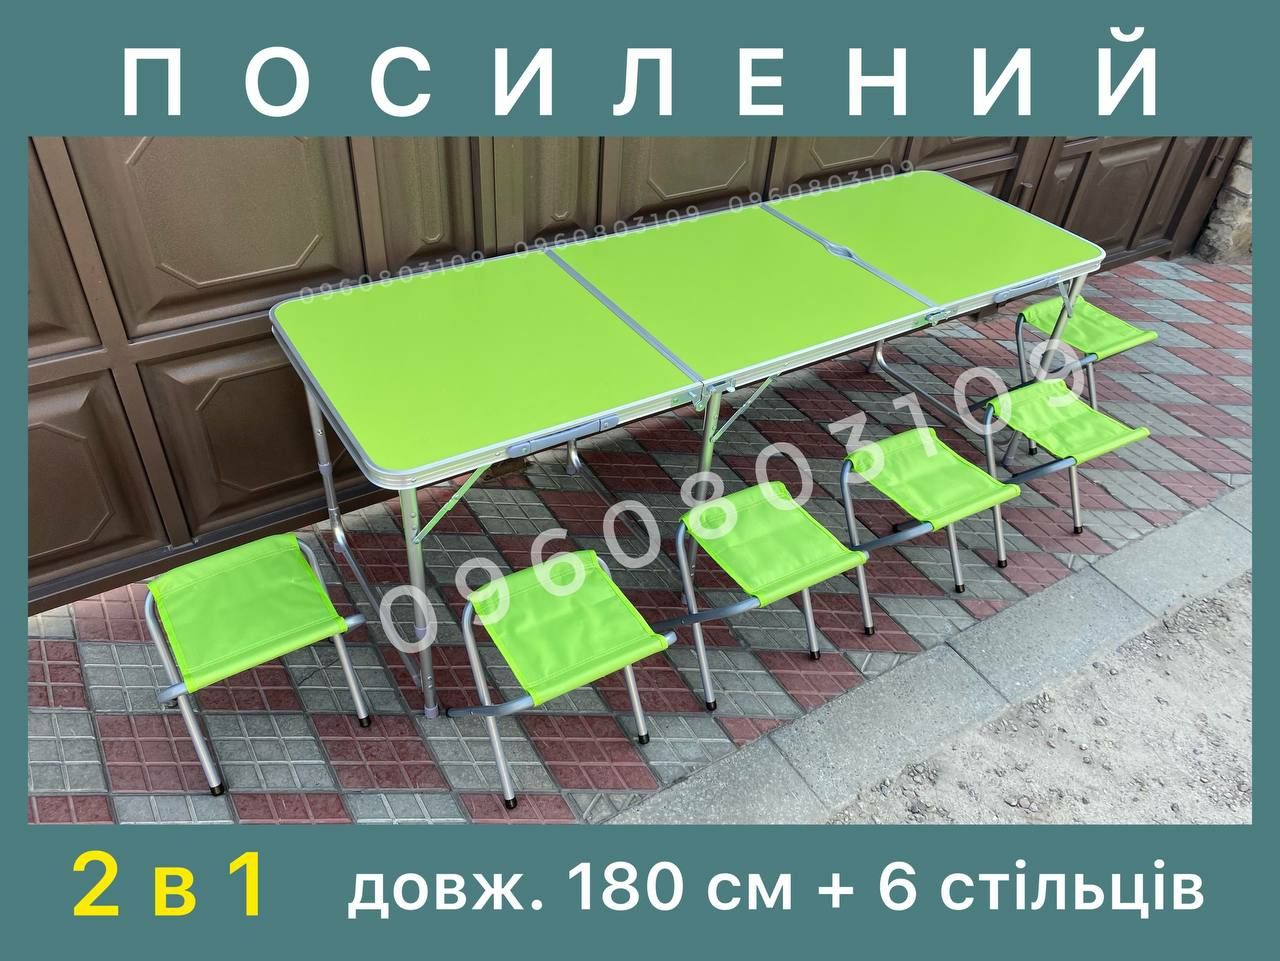 ВЕЛИКИЙ 1.8 м Стіл для пікніка + 6 стільців. Туристичний розкладний